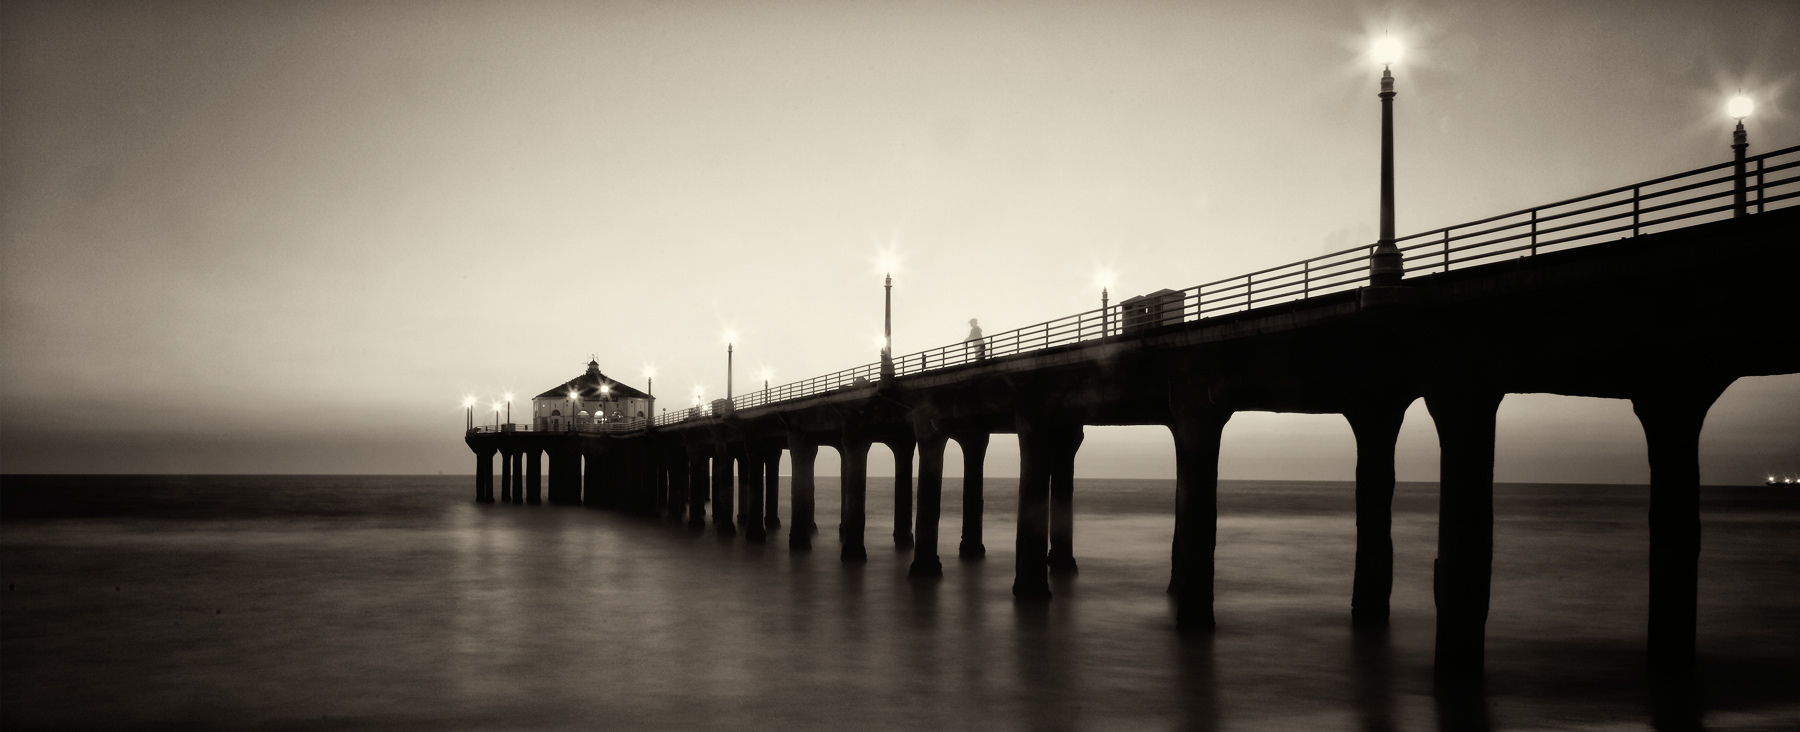 Gary Lott - Manhattan Beach Pier